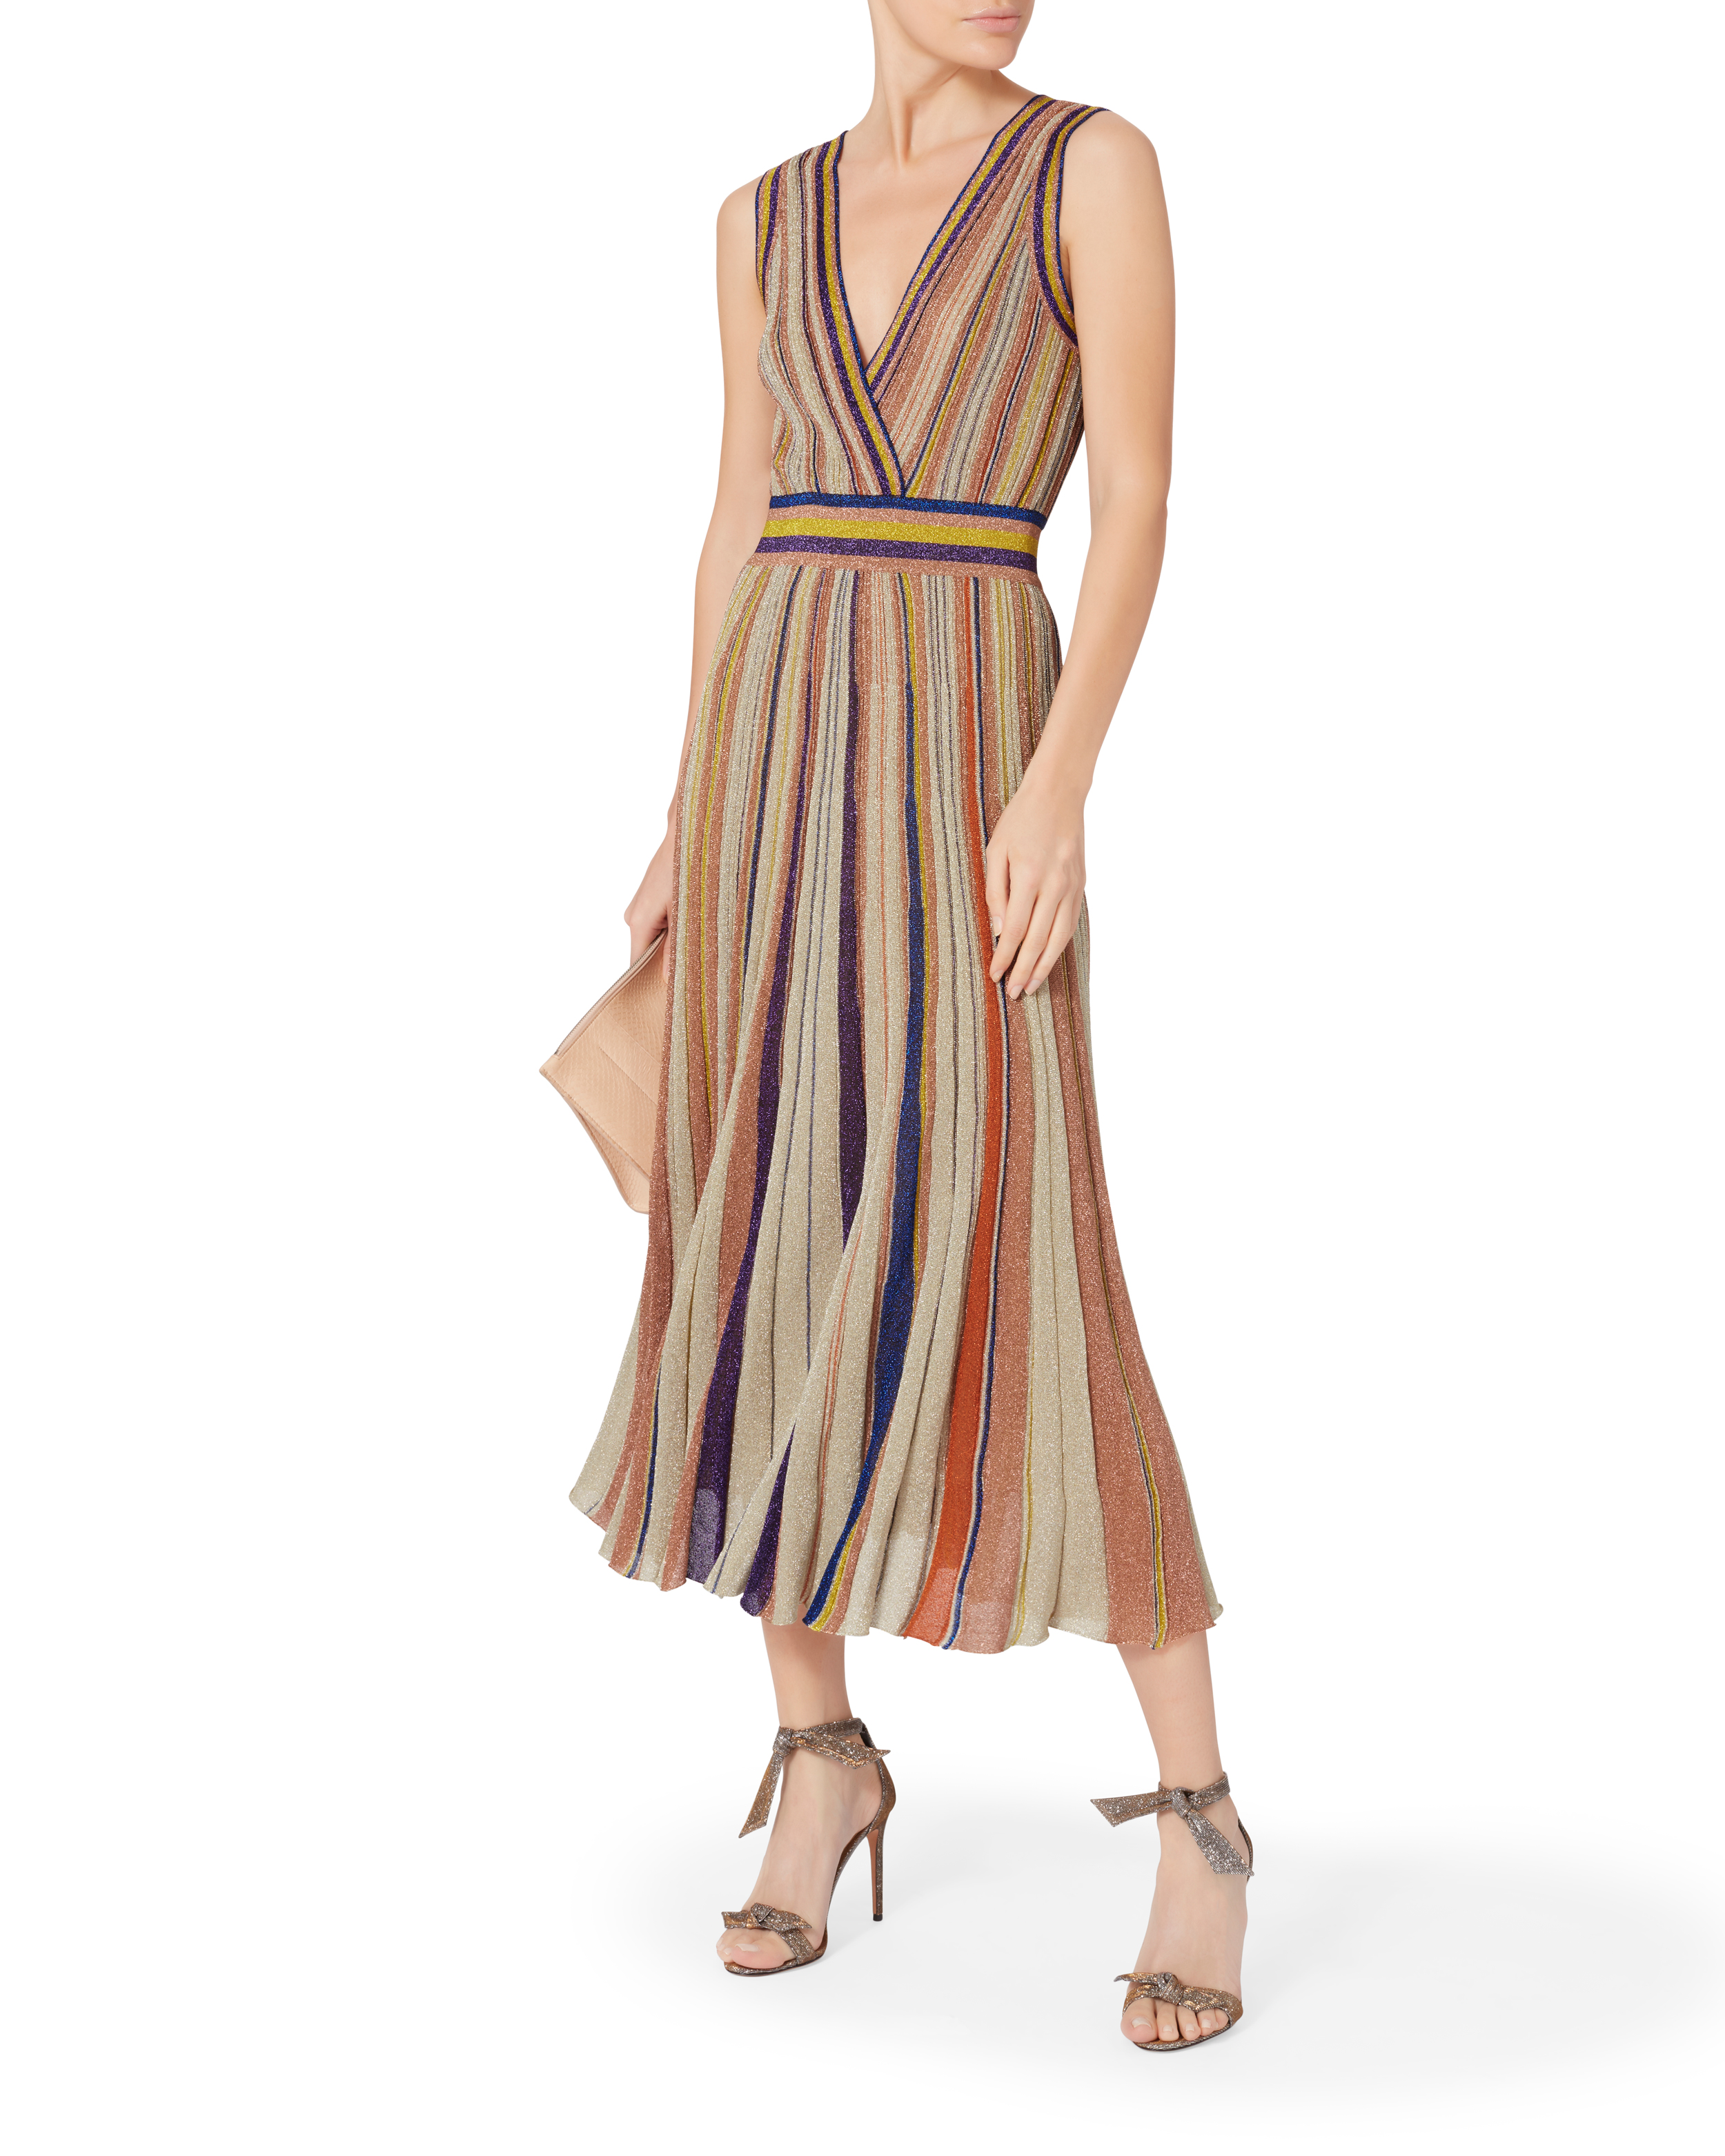 Intermix X Missoni Striped Pleated Lurex Dress | INTERMIX®